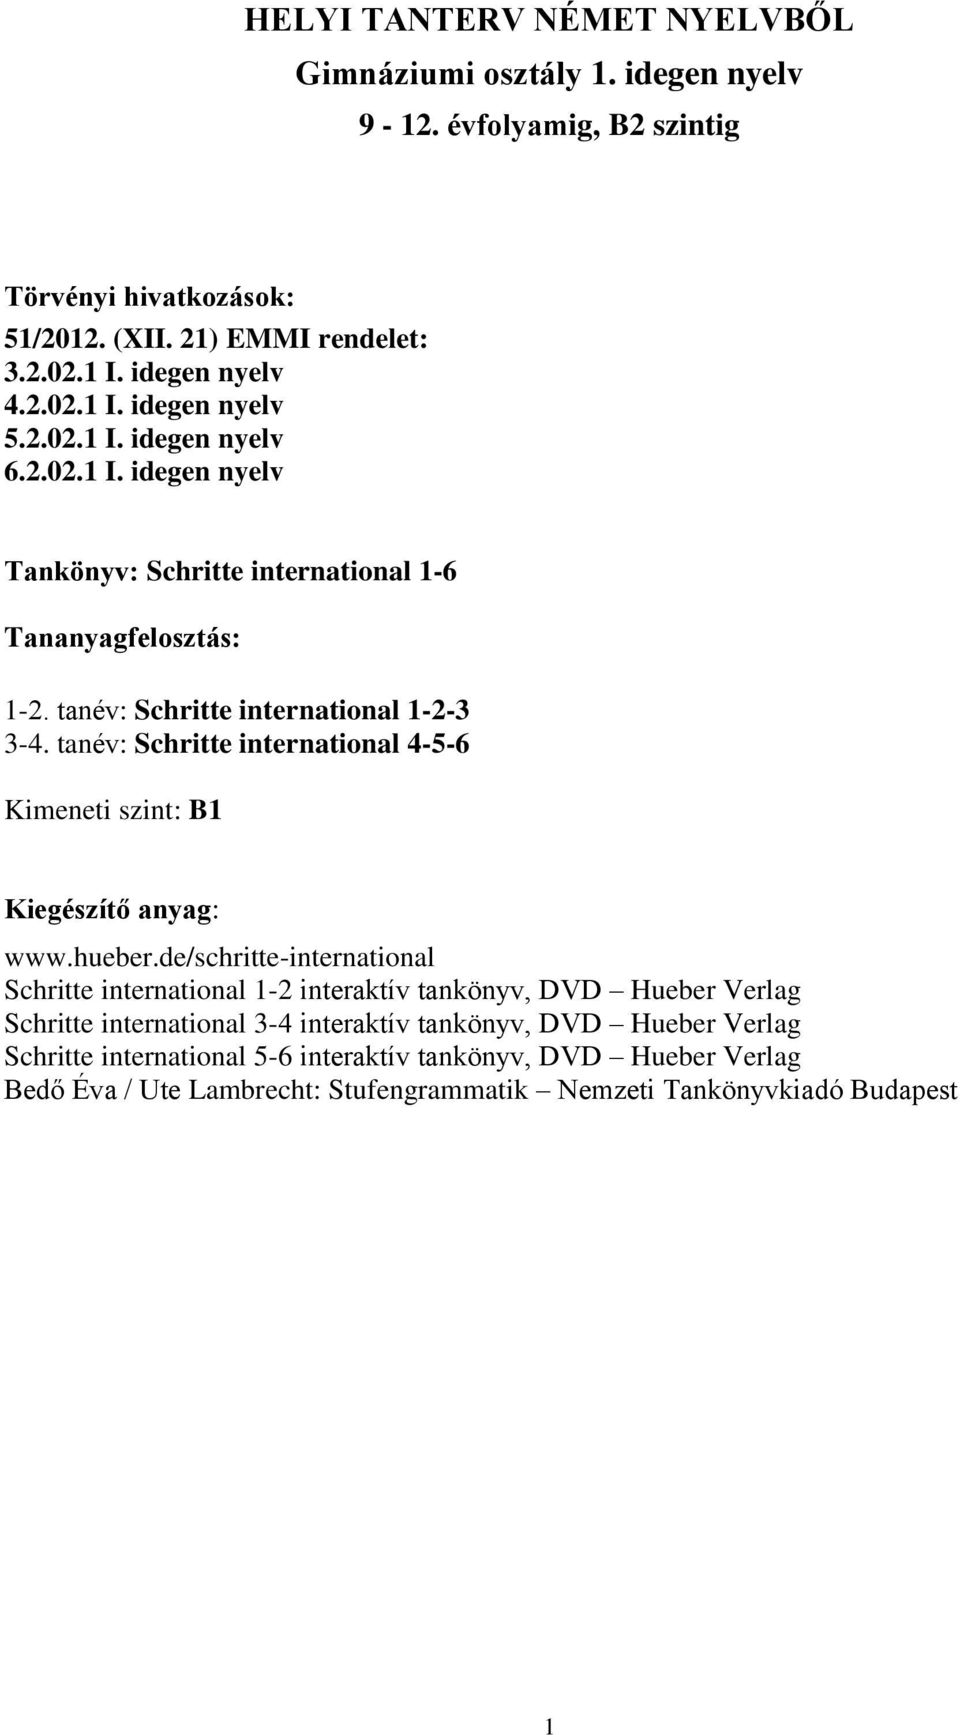 tanév: Schritte international 4-5-6 Kimeneti szint: B1 Kiegészítő anyag: www.hueber.